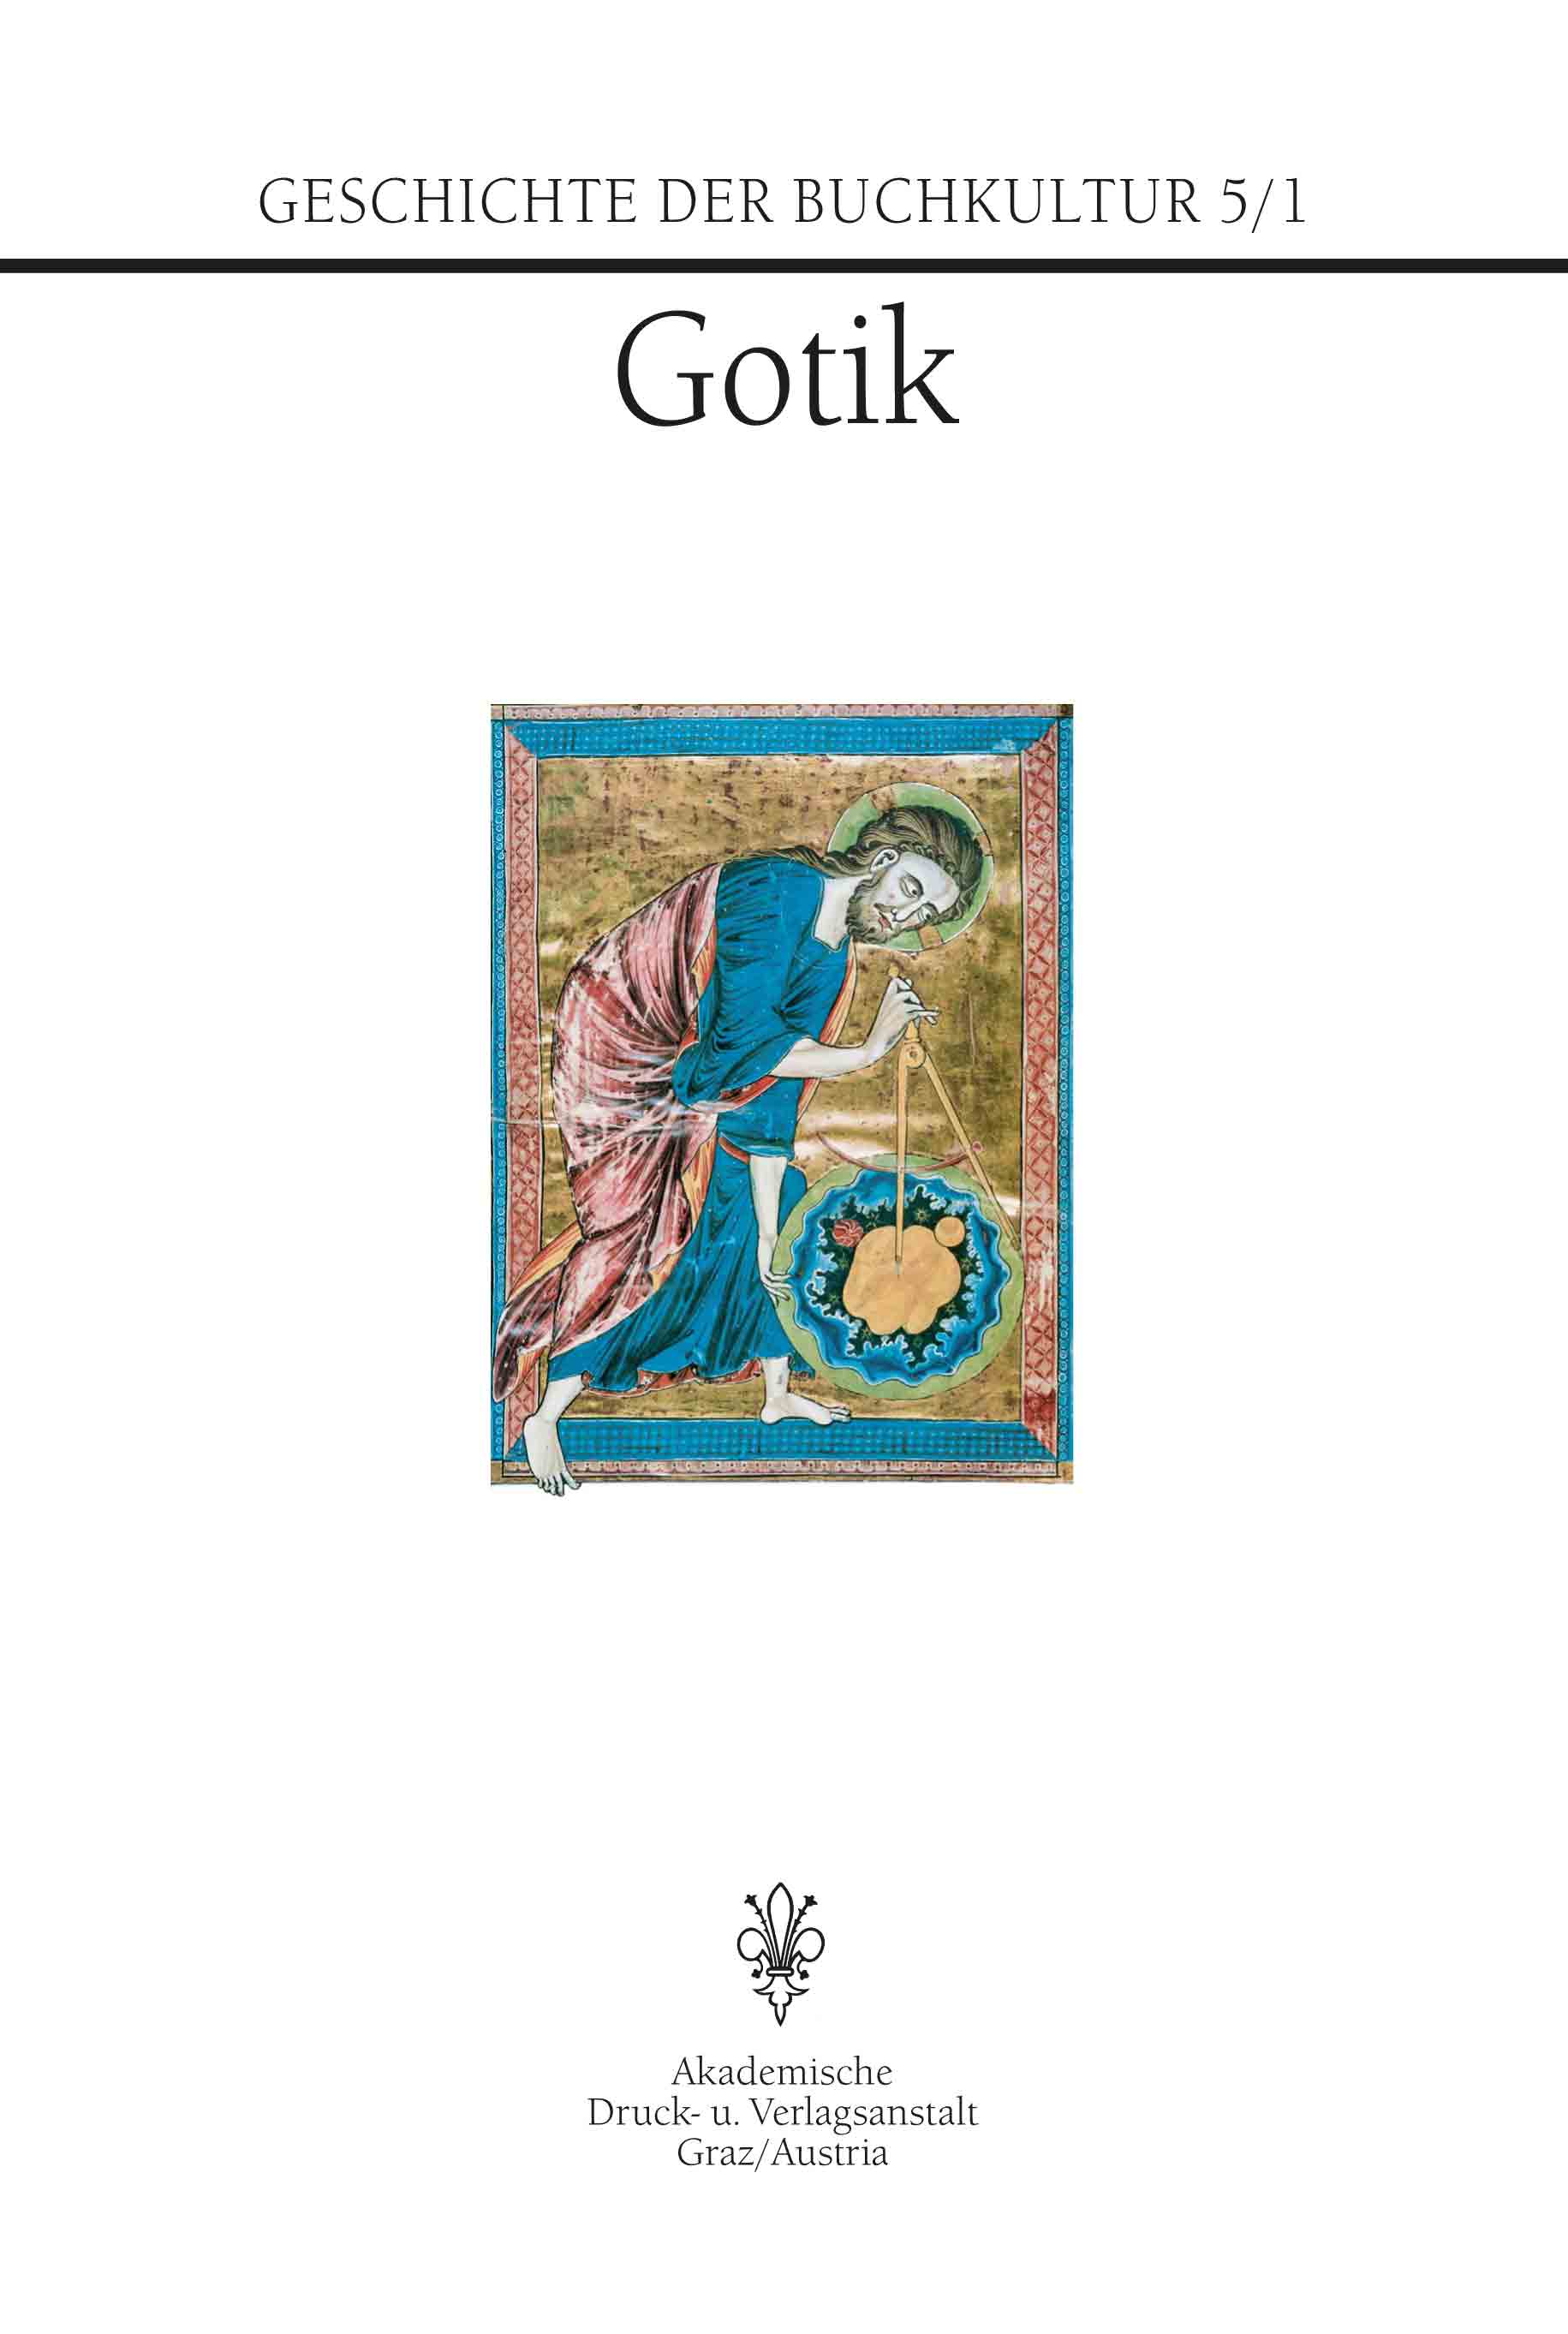 Geschichte der Buchkultur 5/1: Gotik